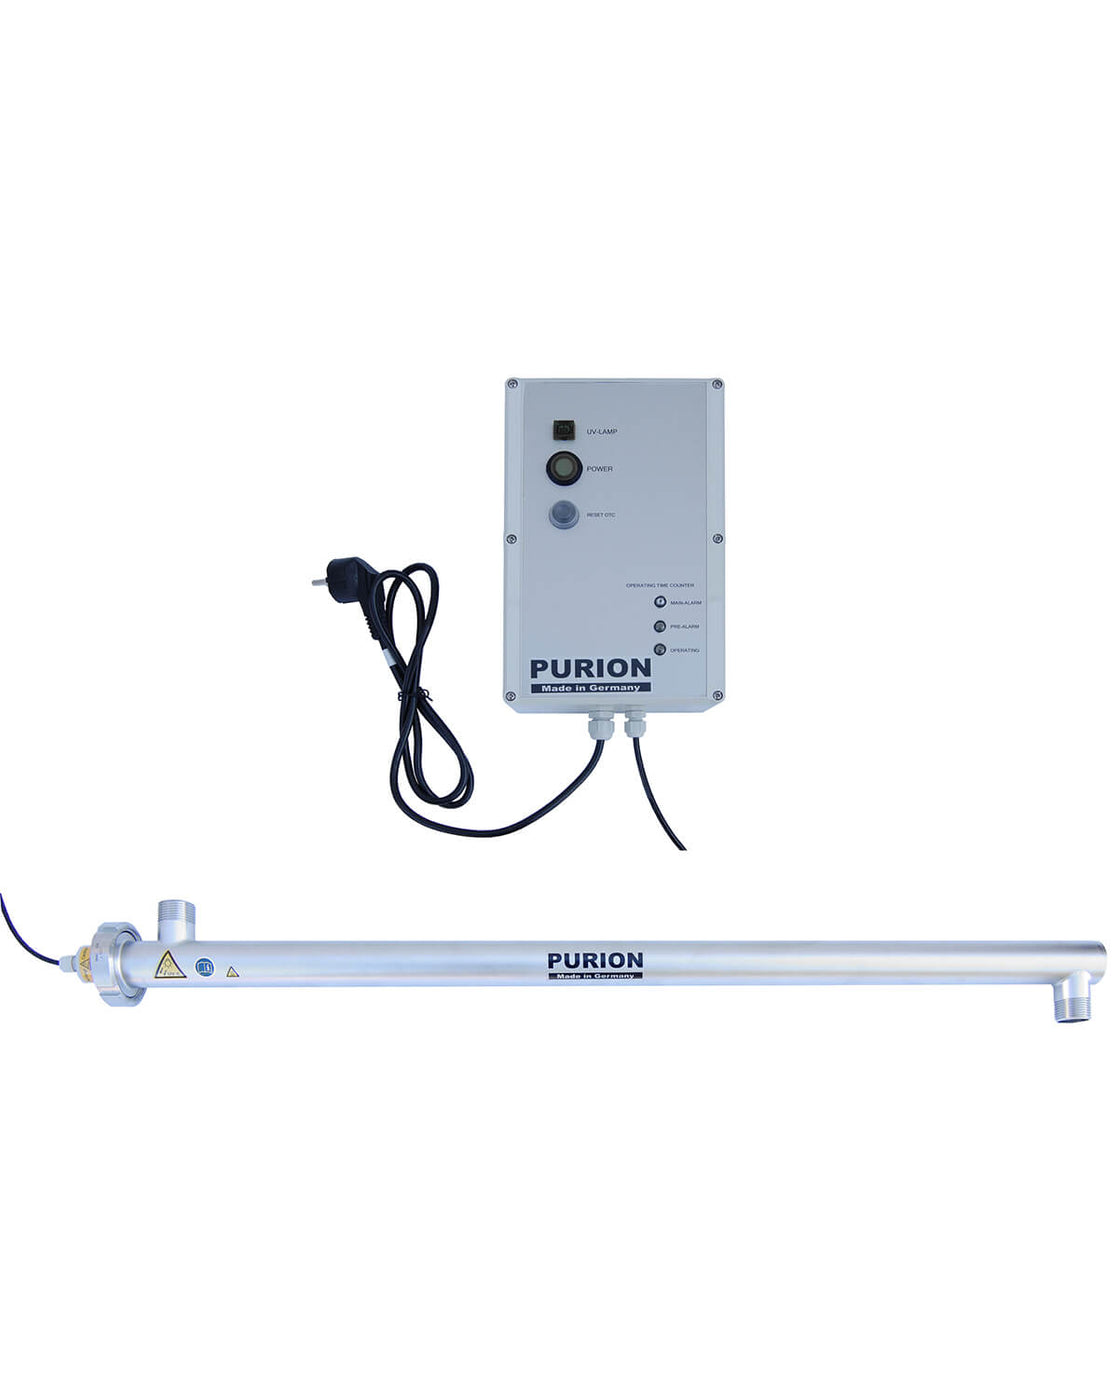 Ein kleines elektronisches Gerät mit angeschlossenem Kabel, konzipiert für die UV-C-Desinfektion PURION 2500 H OTC.